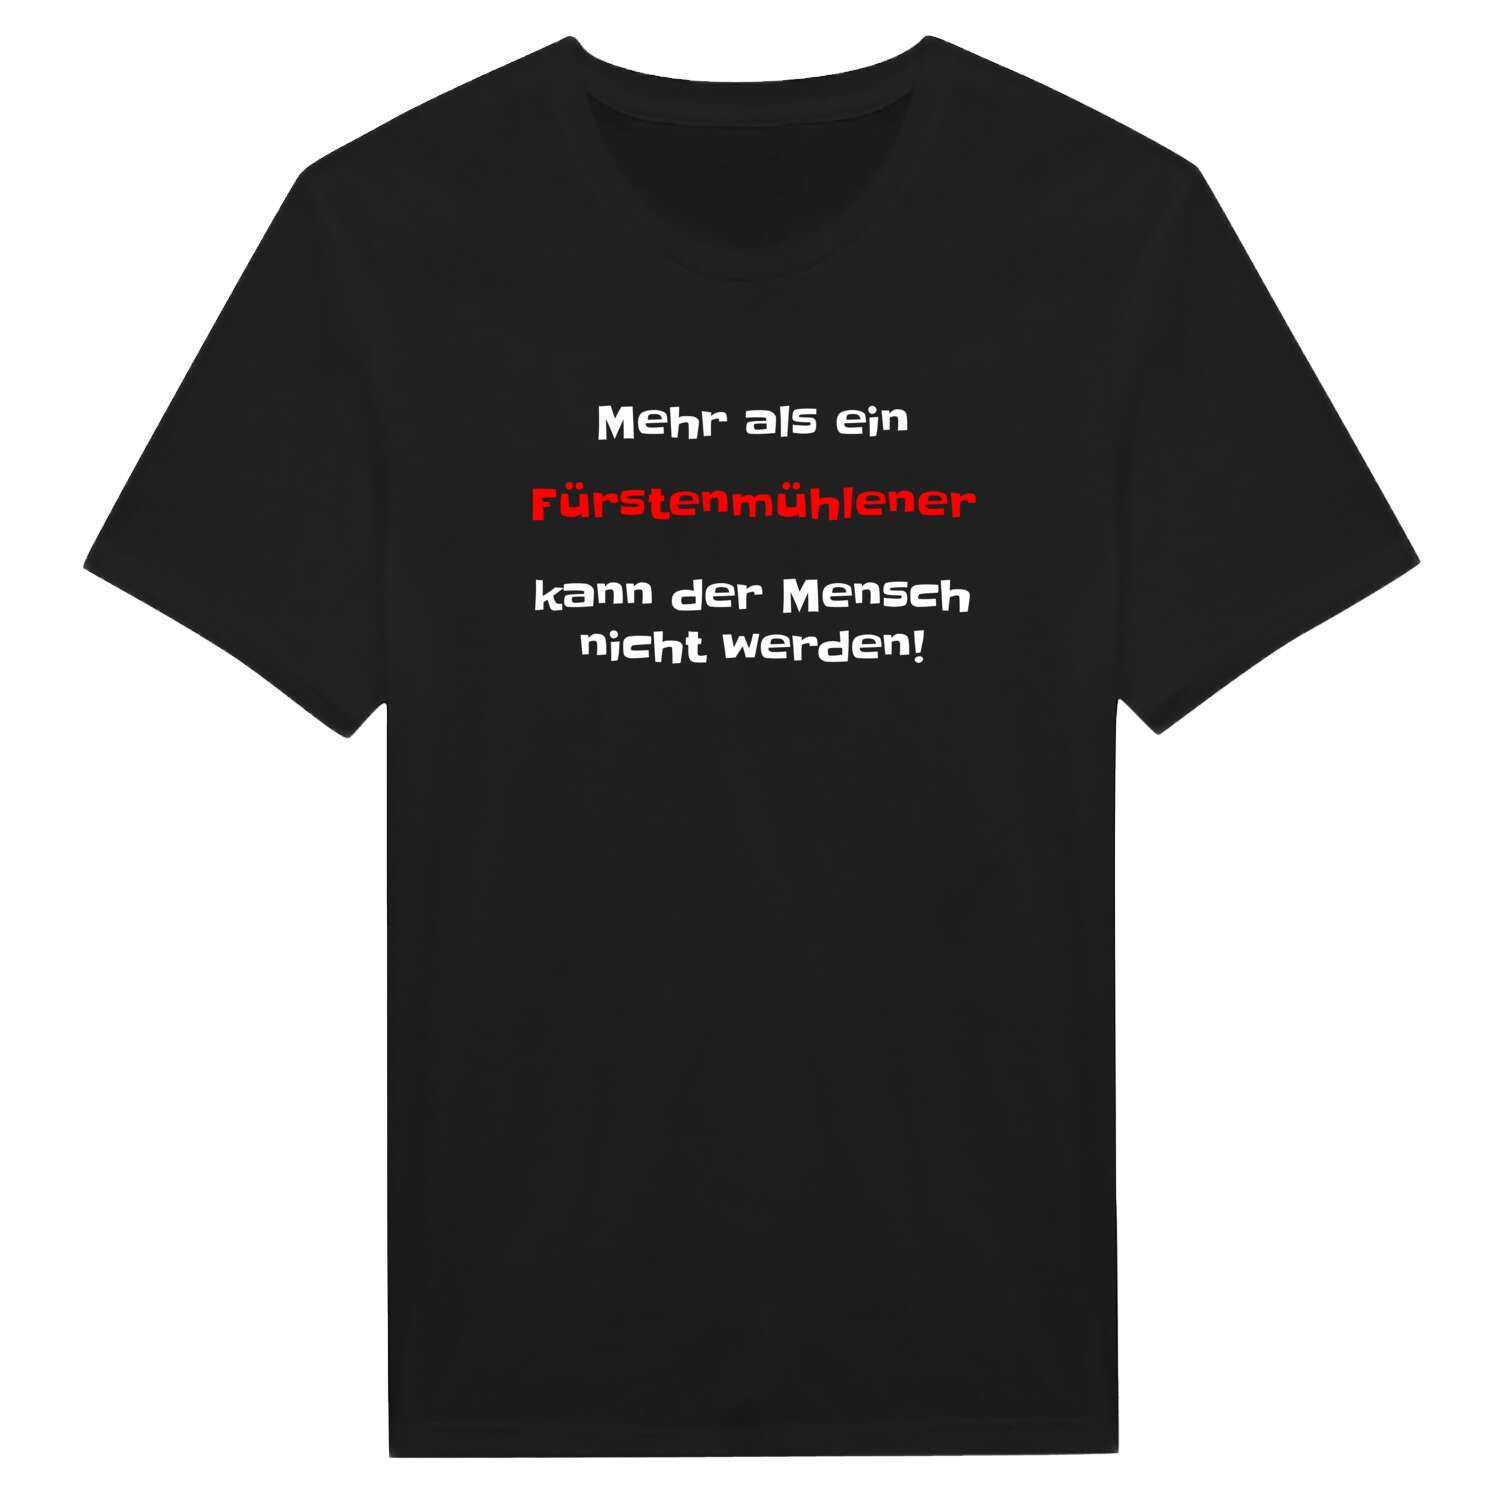 Fürstenmühle T-Shirt »Mehr als ein«